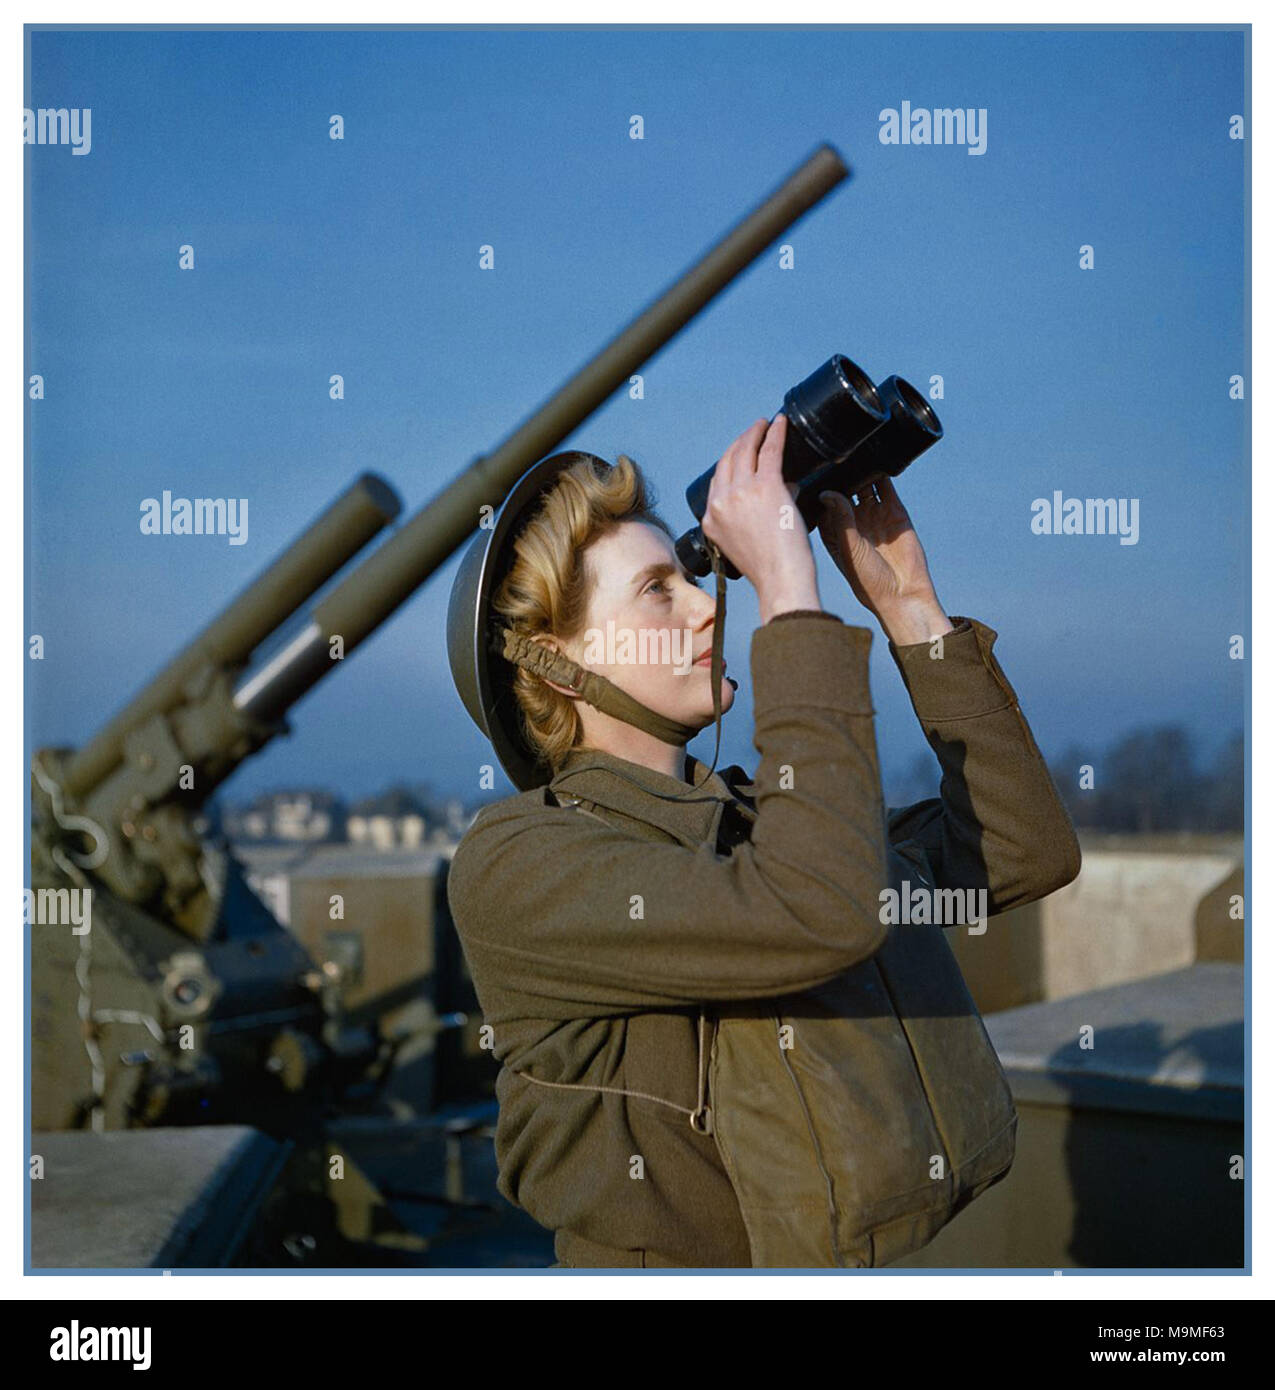 1940 WW2 de diciembre de 1942 Servicio Territorial auxiliar británica (ATS) 'spotter' en un 3.7-pulgadas anti-avión 'ack ack" sitio de pistola buscando signos visuales de la Alemania Nazi, aviones enemigos o bombas volantes Foto de stock